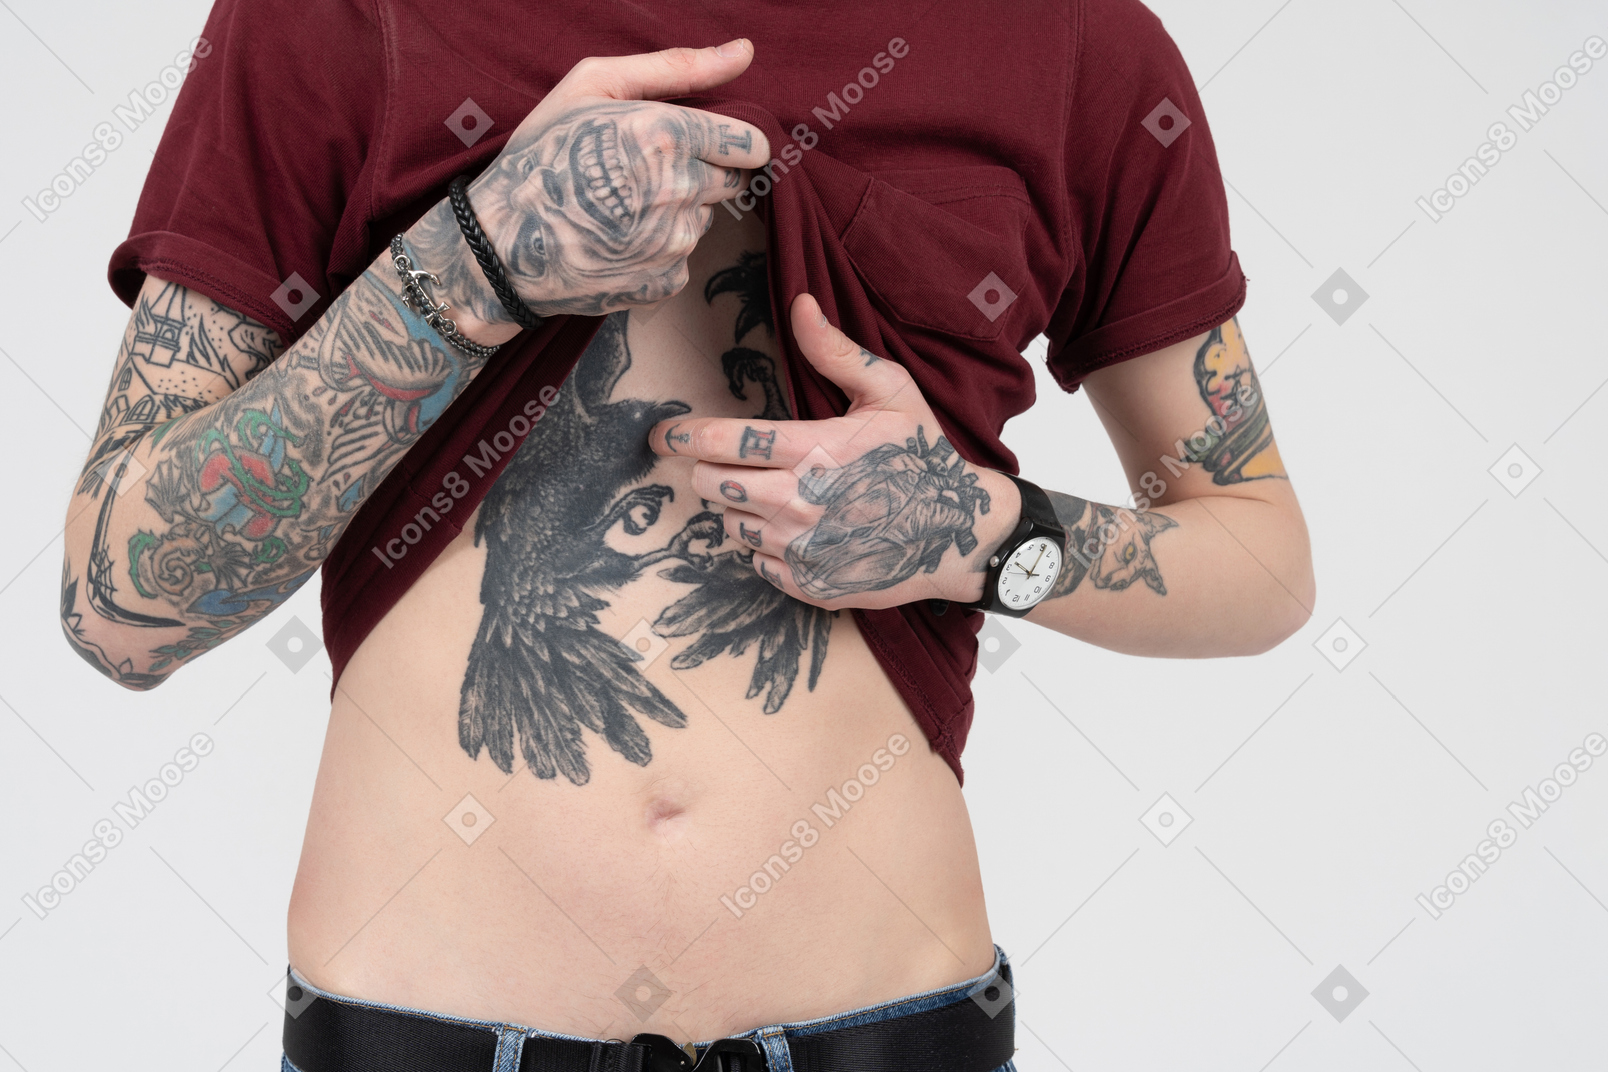 Haut du corps masculin avec des tatouages